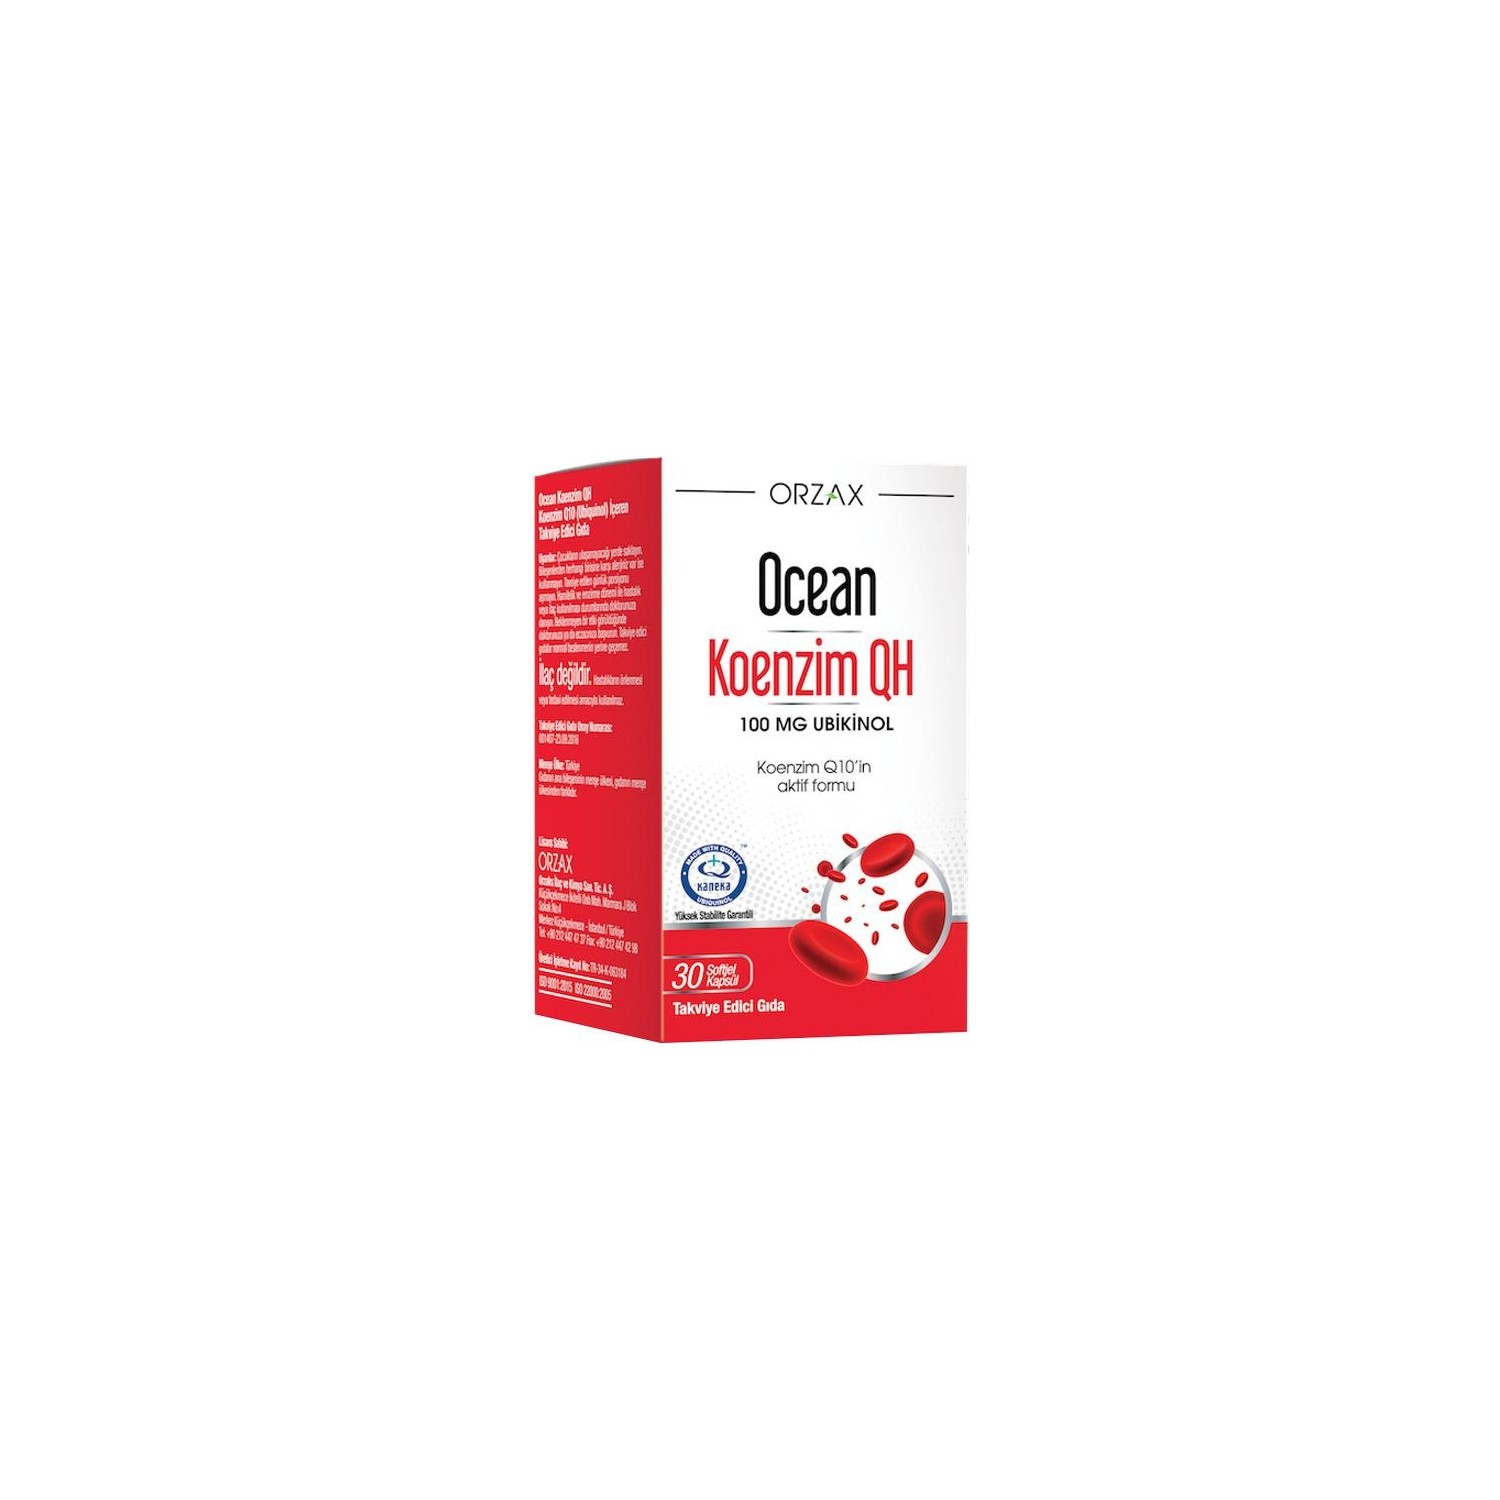 Коэнзим Qh Orzax 100 мг, 30 капсул коэнзим q10 co q10 60 шт капсулы 4626016623376